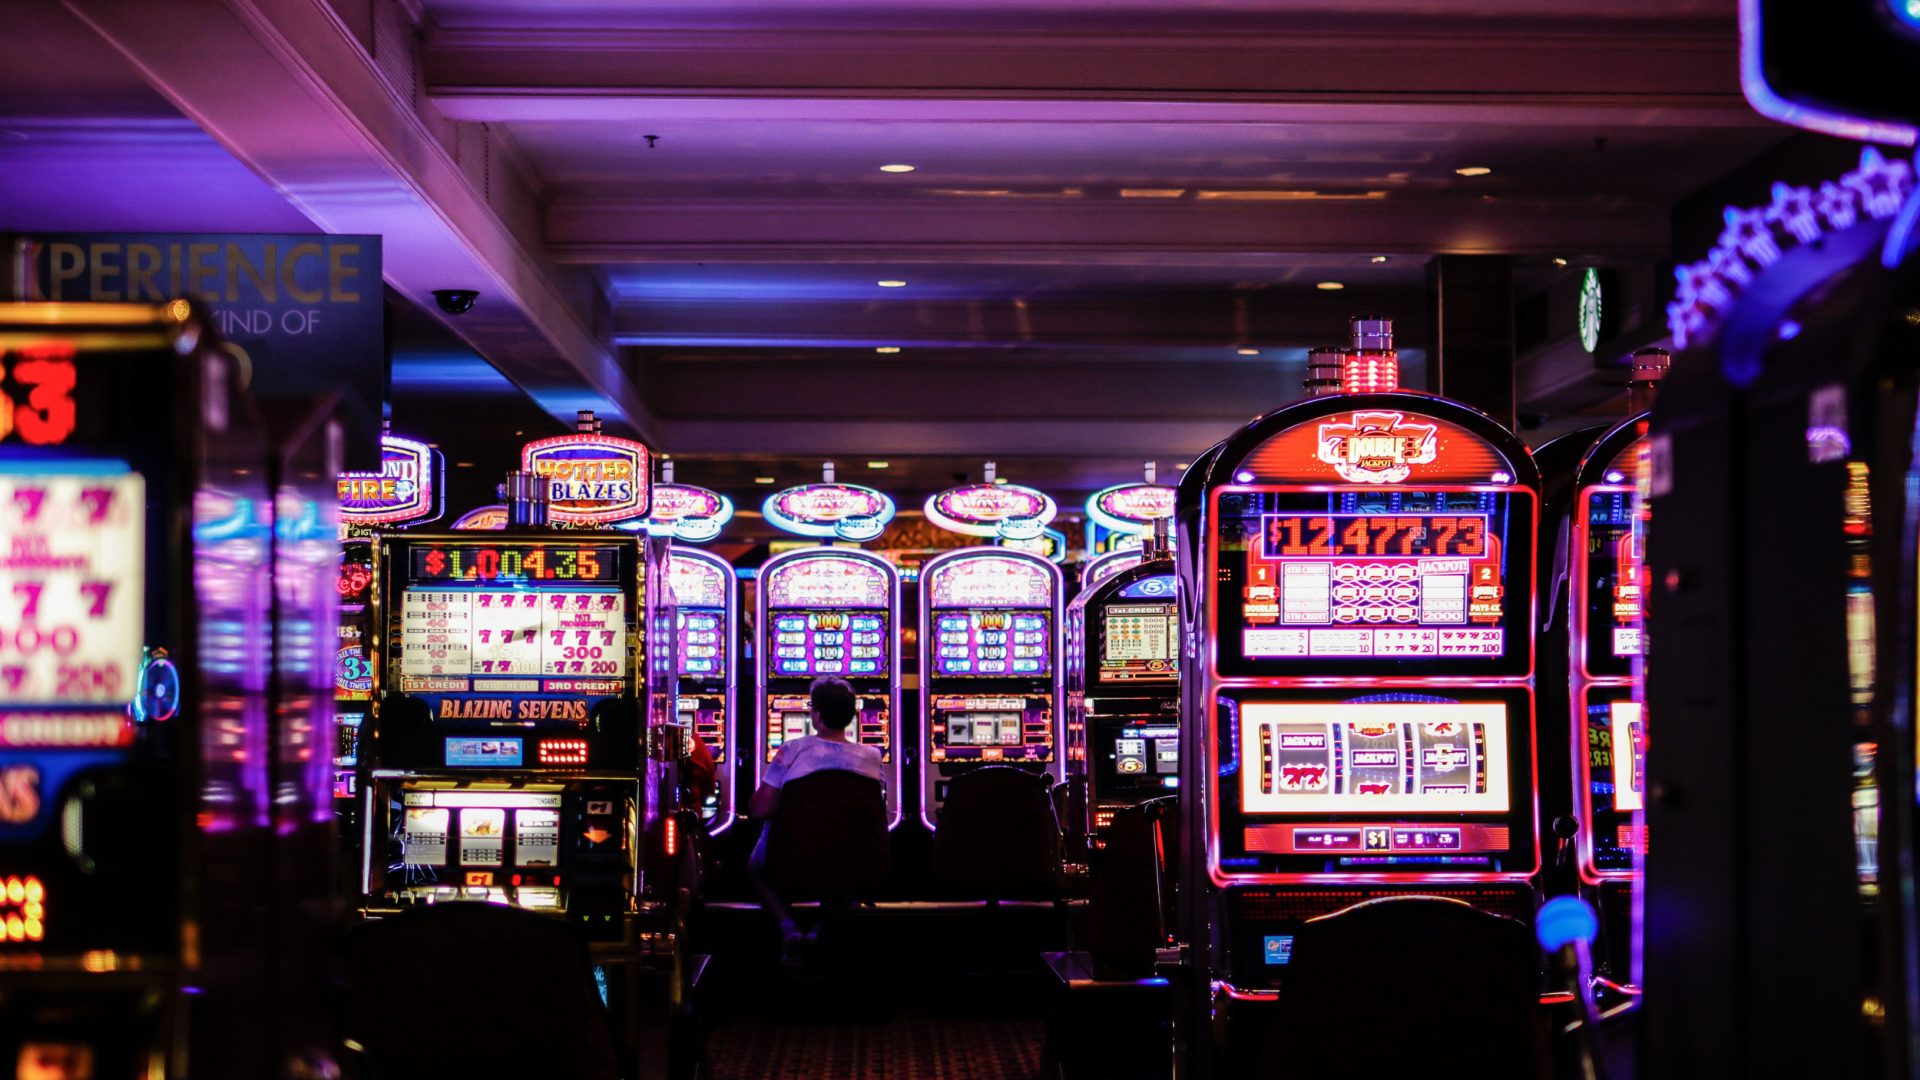 Slot machines in Las Vegas.